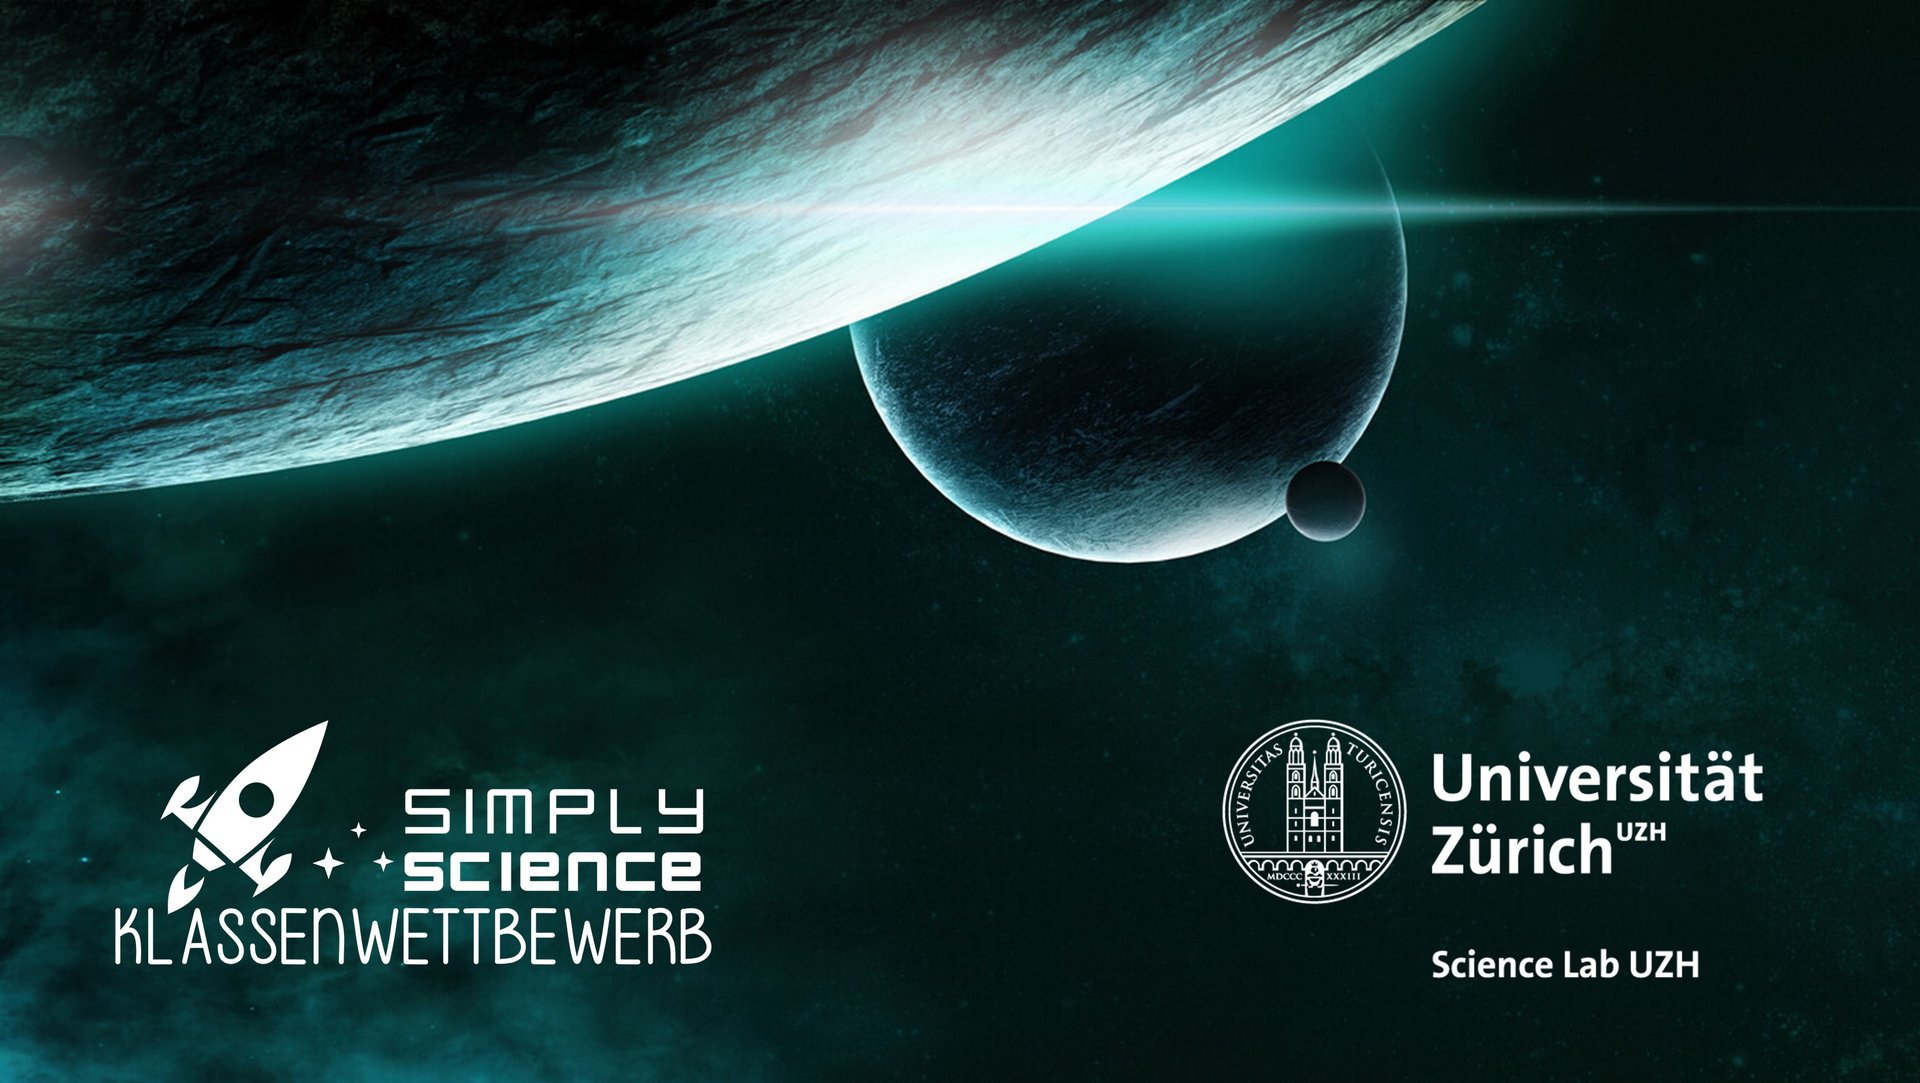  Infografik vonSimply Science Klassenwettbewerb In Zusammenarbeit mit Science Lab UZH. 3 Planeten auf dunkle Hintergrund.